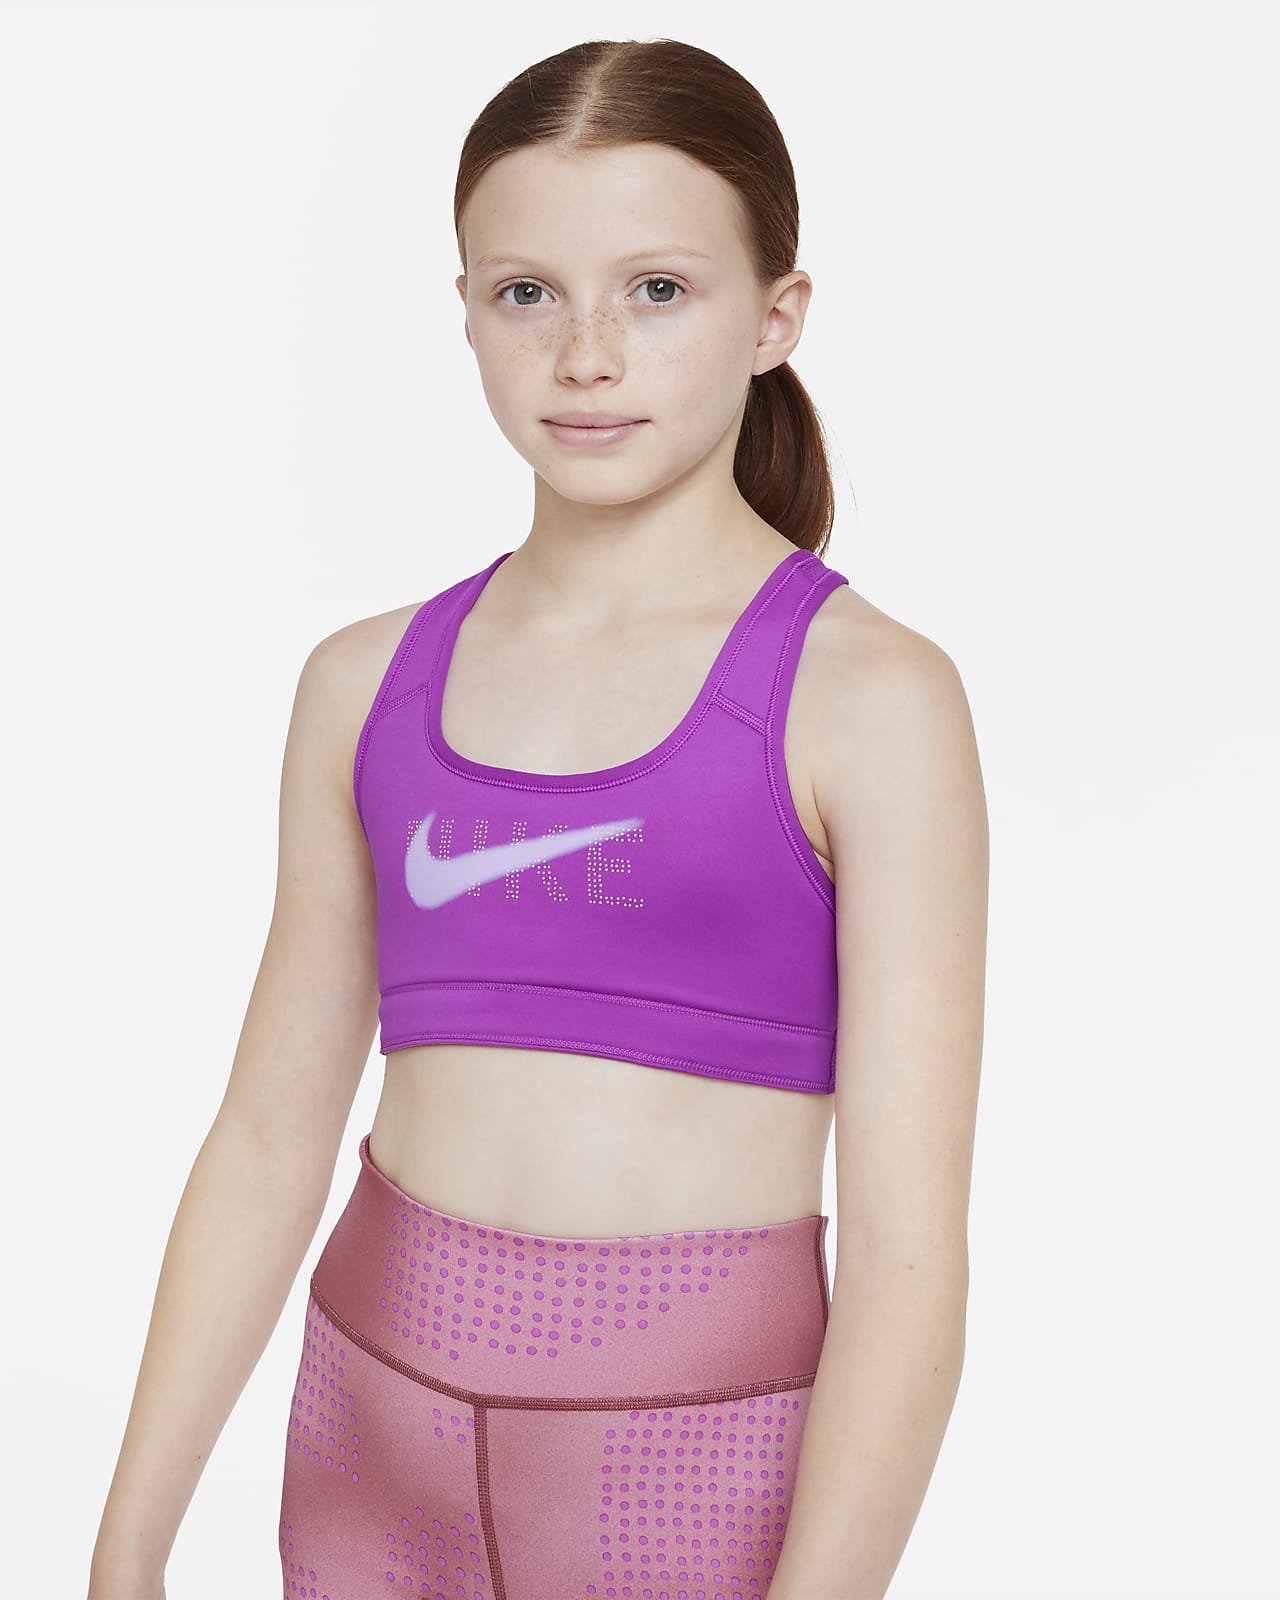 Nike Swoosh Older Kids' (Girls') Reversible Sports Bra. Nike PH